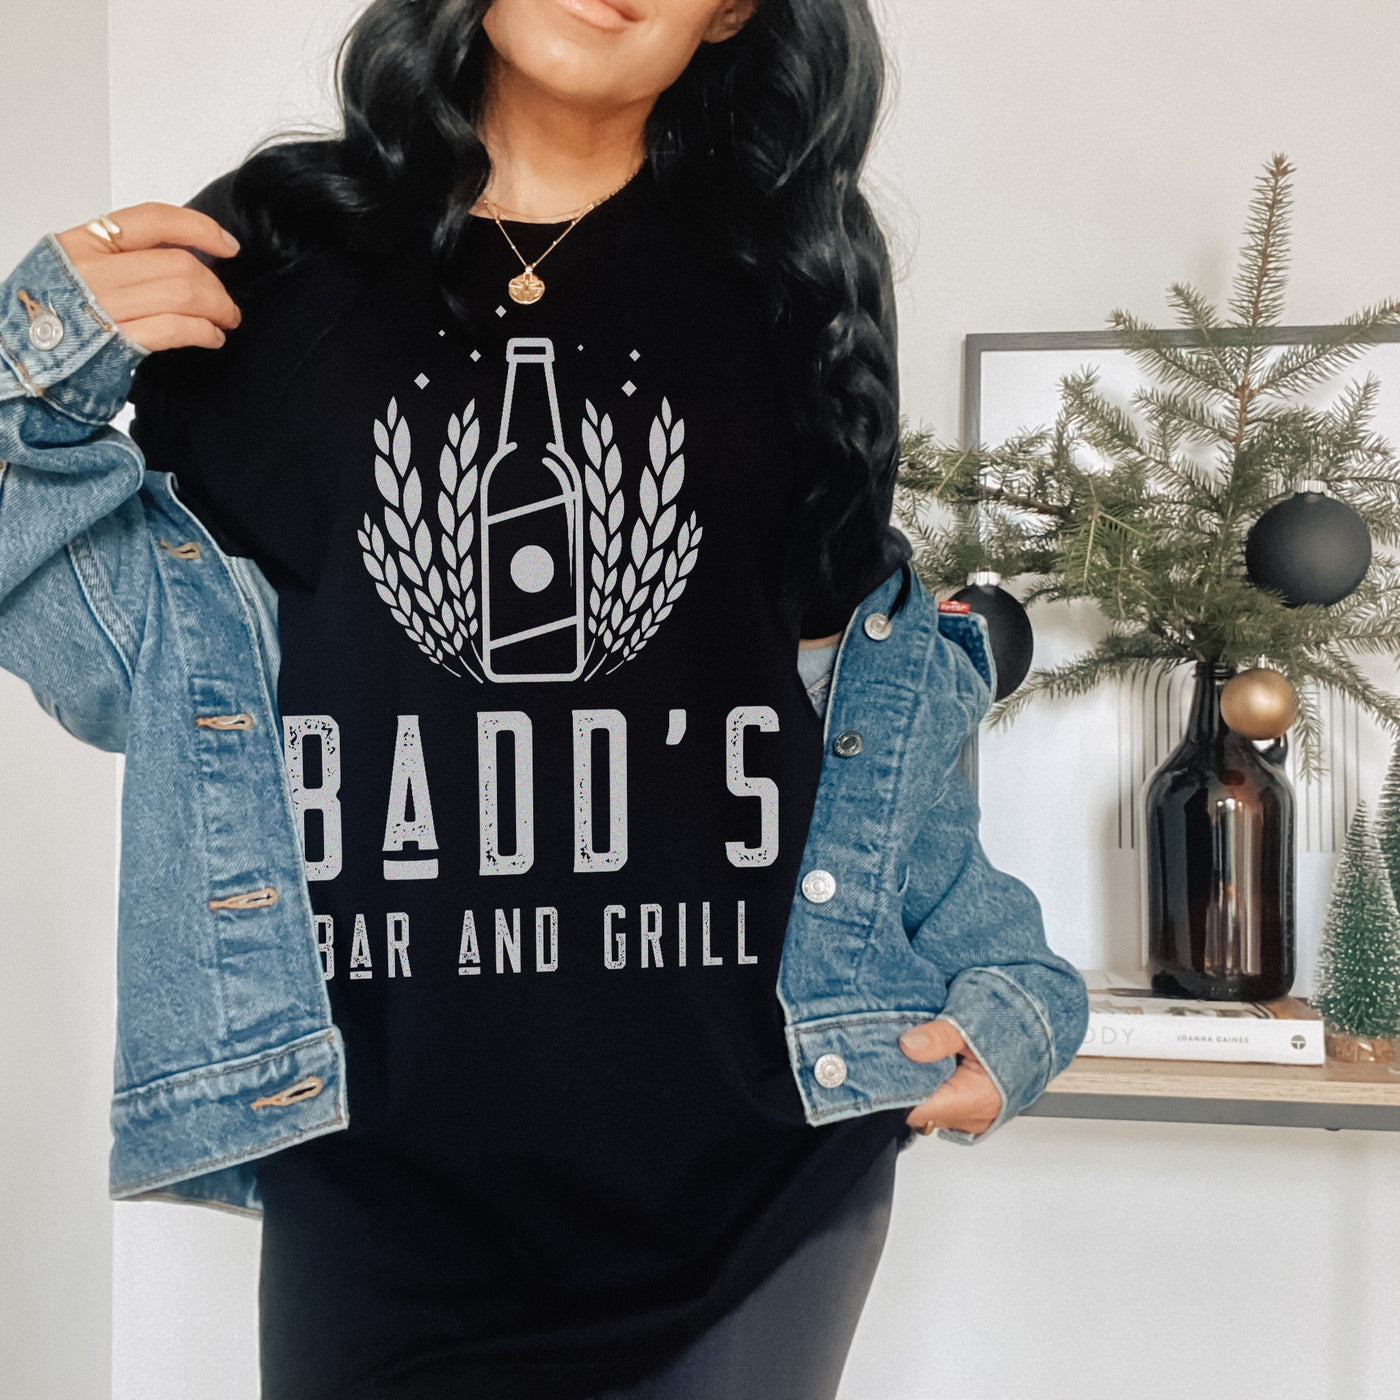 Jasinda Wilder - Badd's Bar and Grill T-Shirt - Novel Grounds